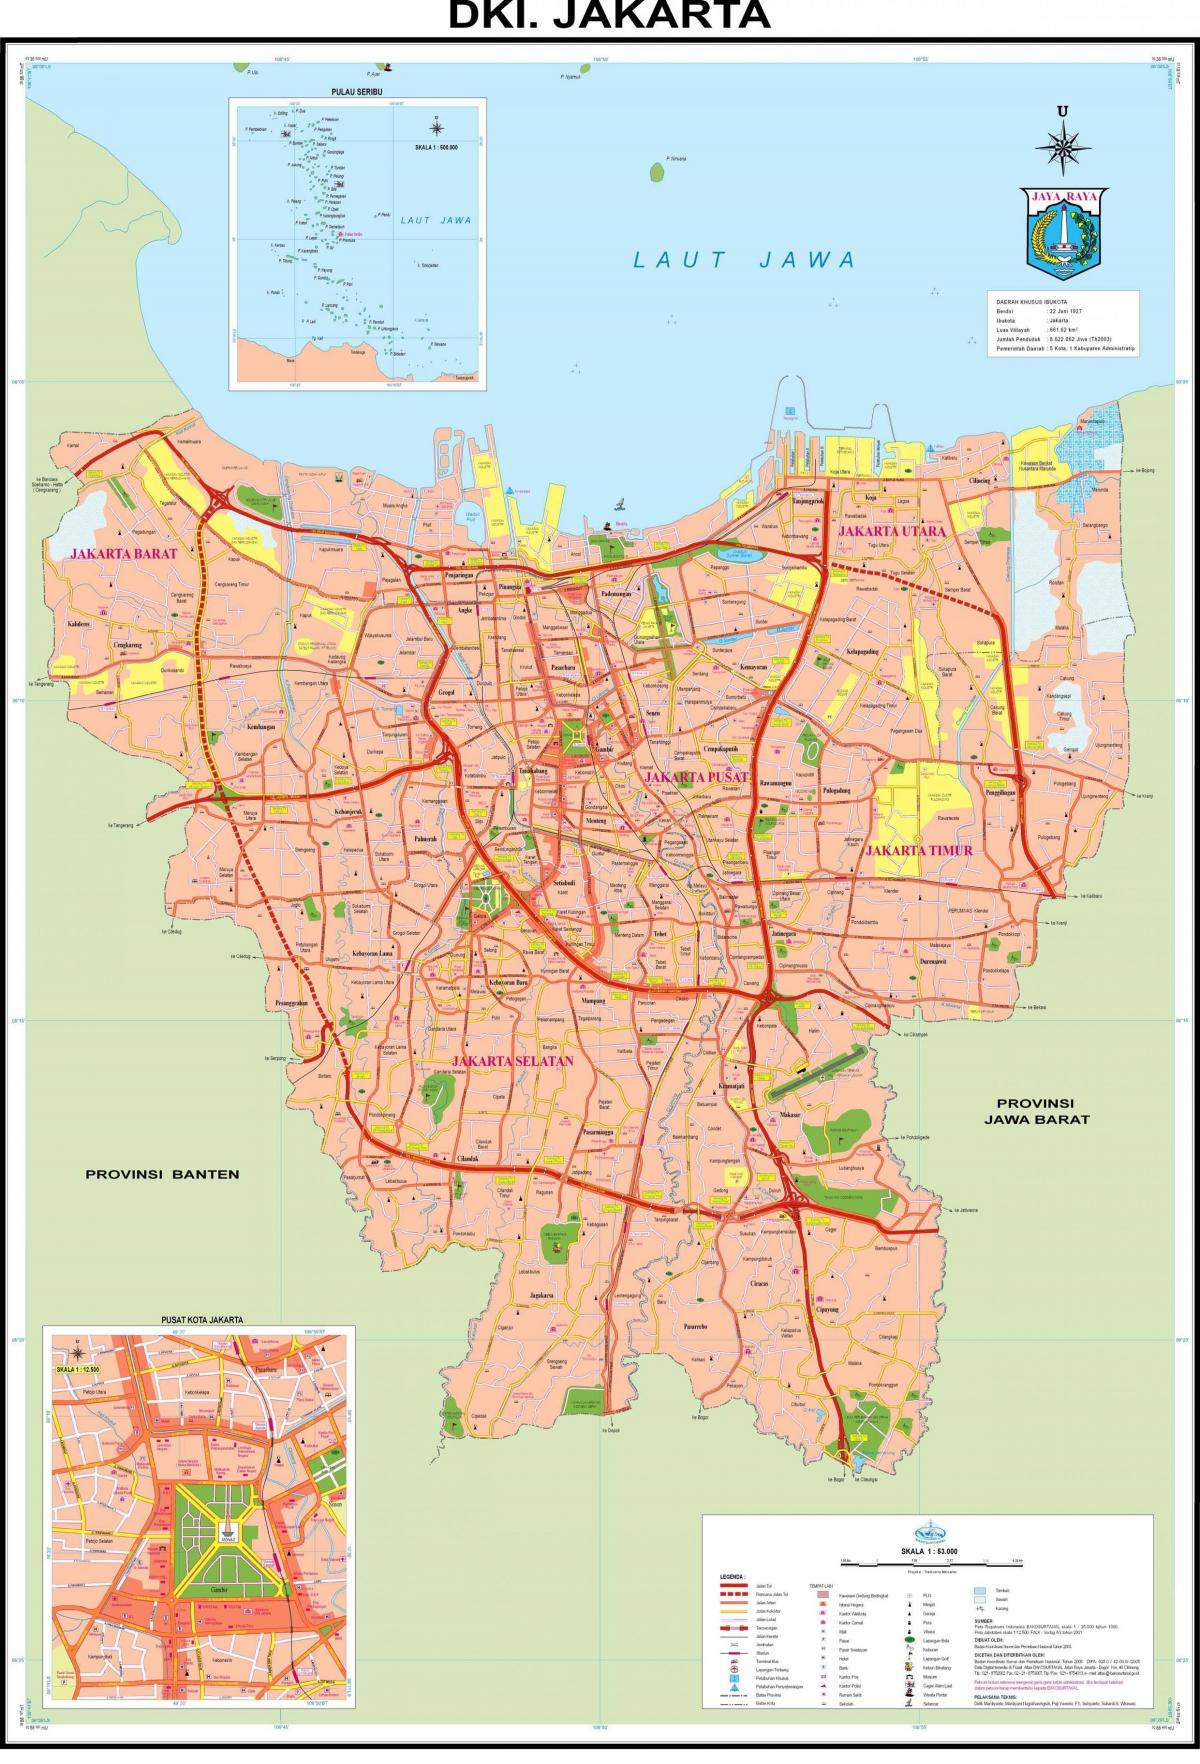 De la ciudad de yakarta mapa